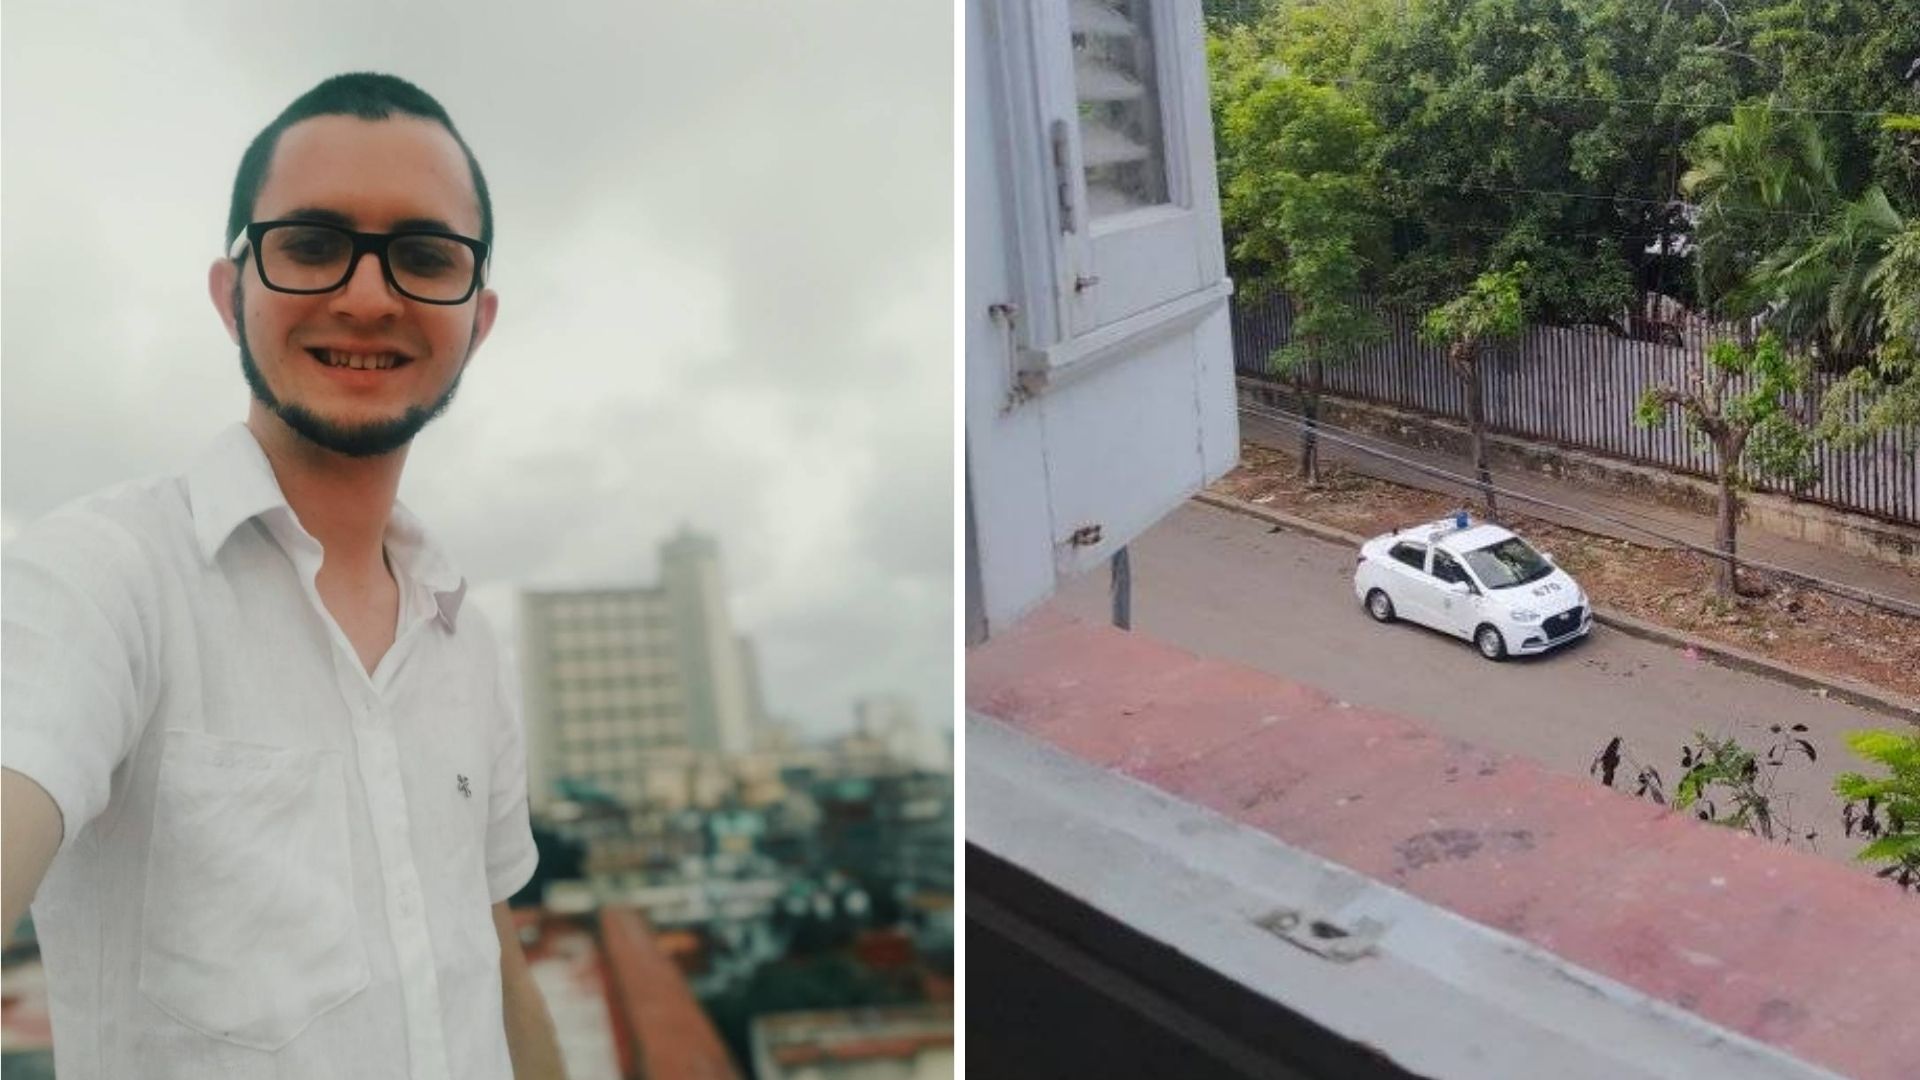 Según contó Acosta Hernández en Facebook, lo detuvieron tres policías vestidos de civil, y lo introdujeron en un auto marca lada de color blanco